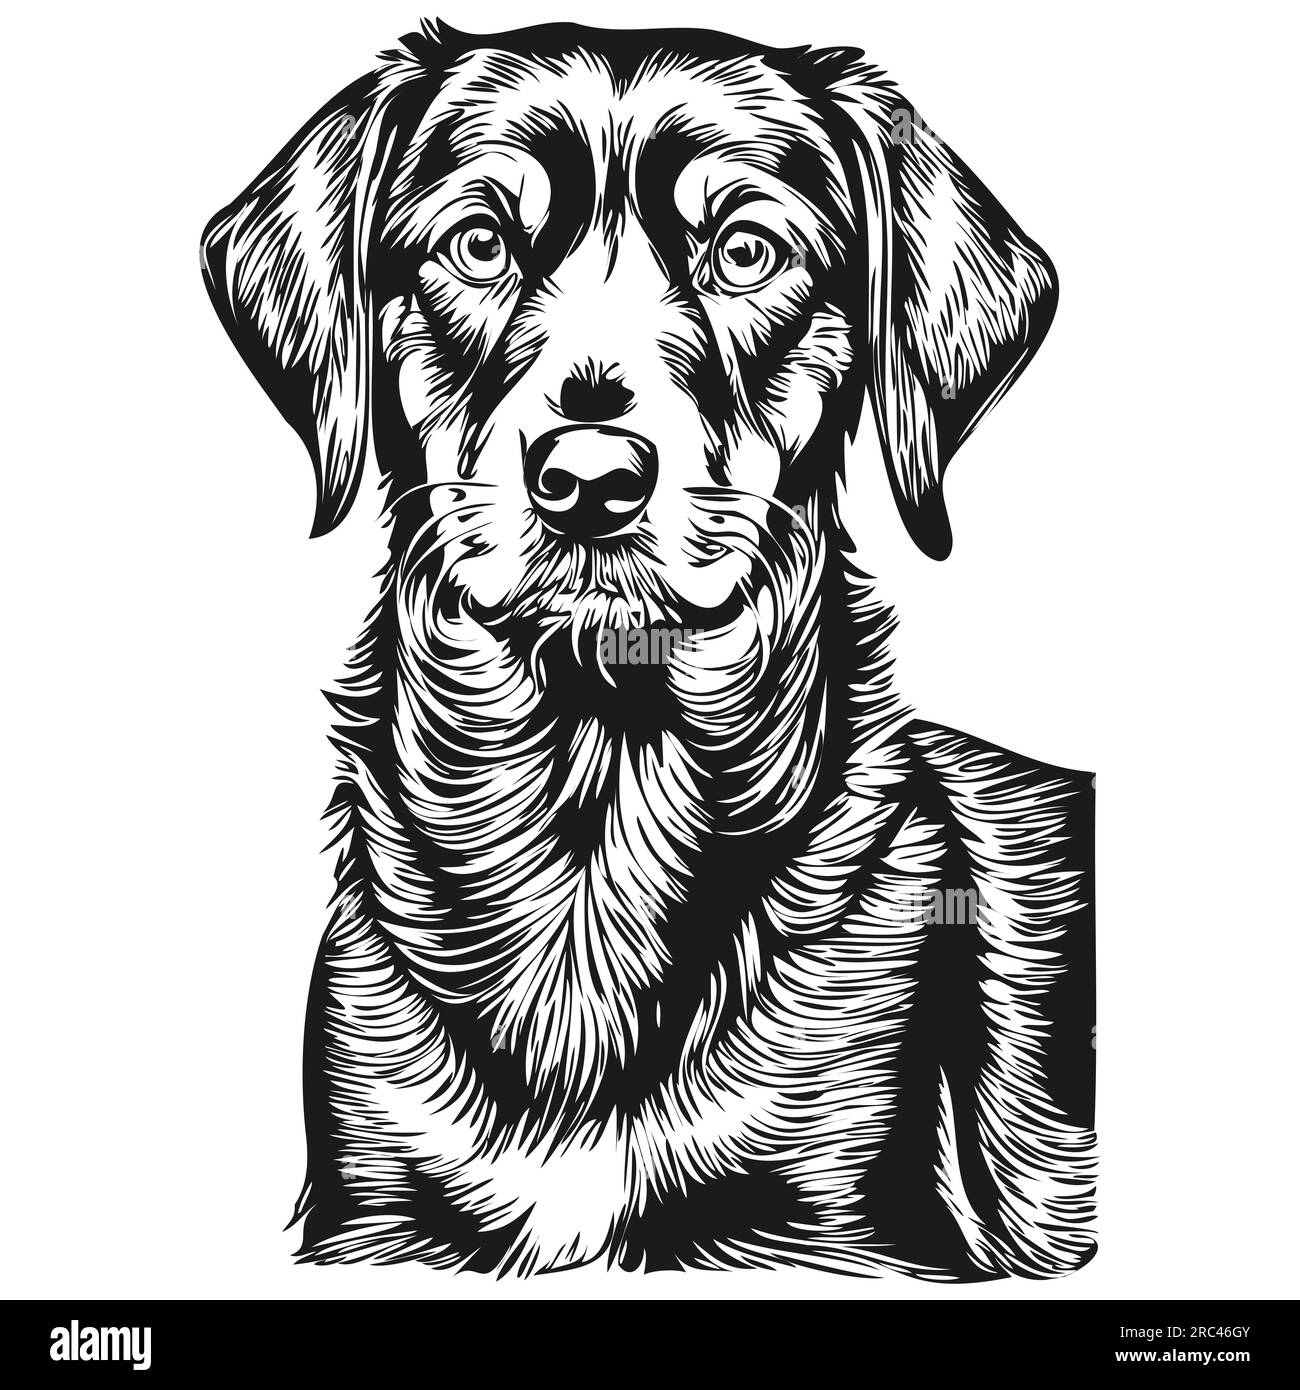 Noir et Tan Coonhound chien dessin au crayon réaliste en vecteur, illustration au trait de visage de chien noir et blanc animal de compagnie réaliste de race Illustration de Vecteur